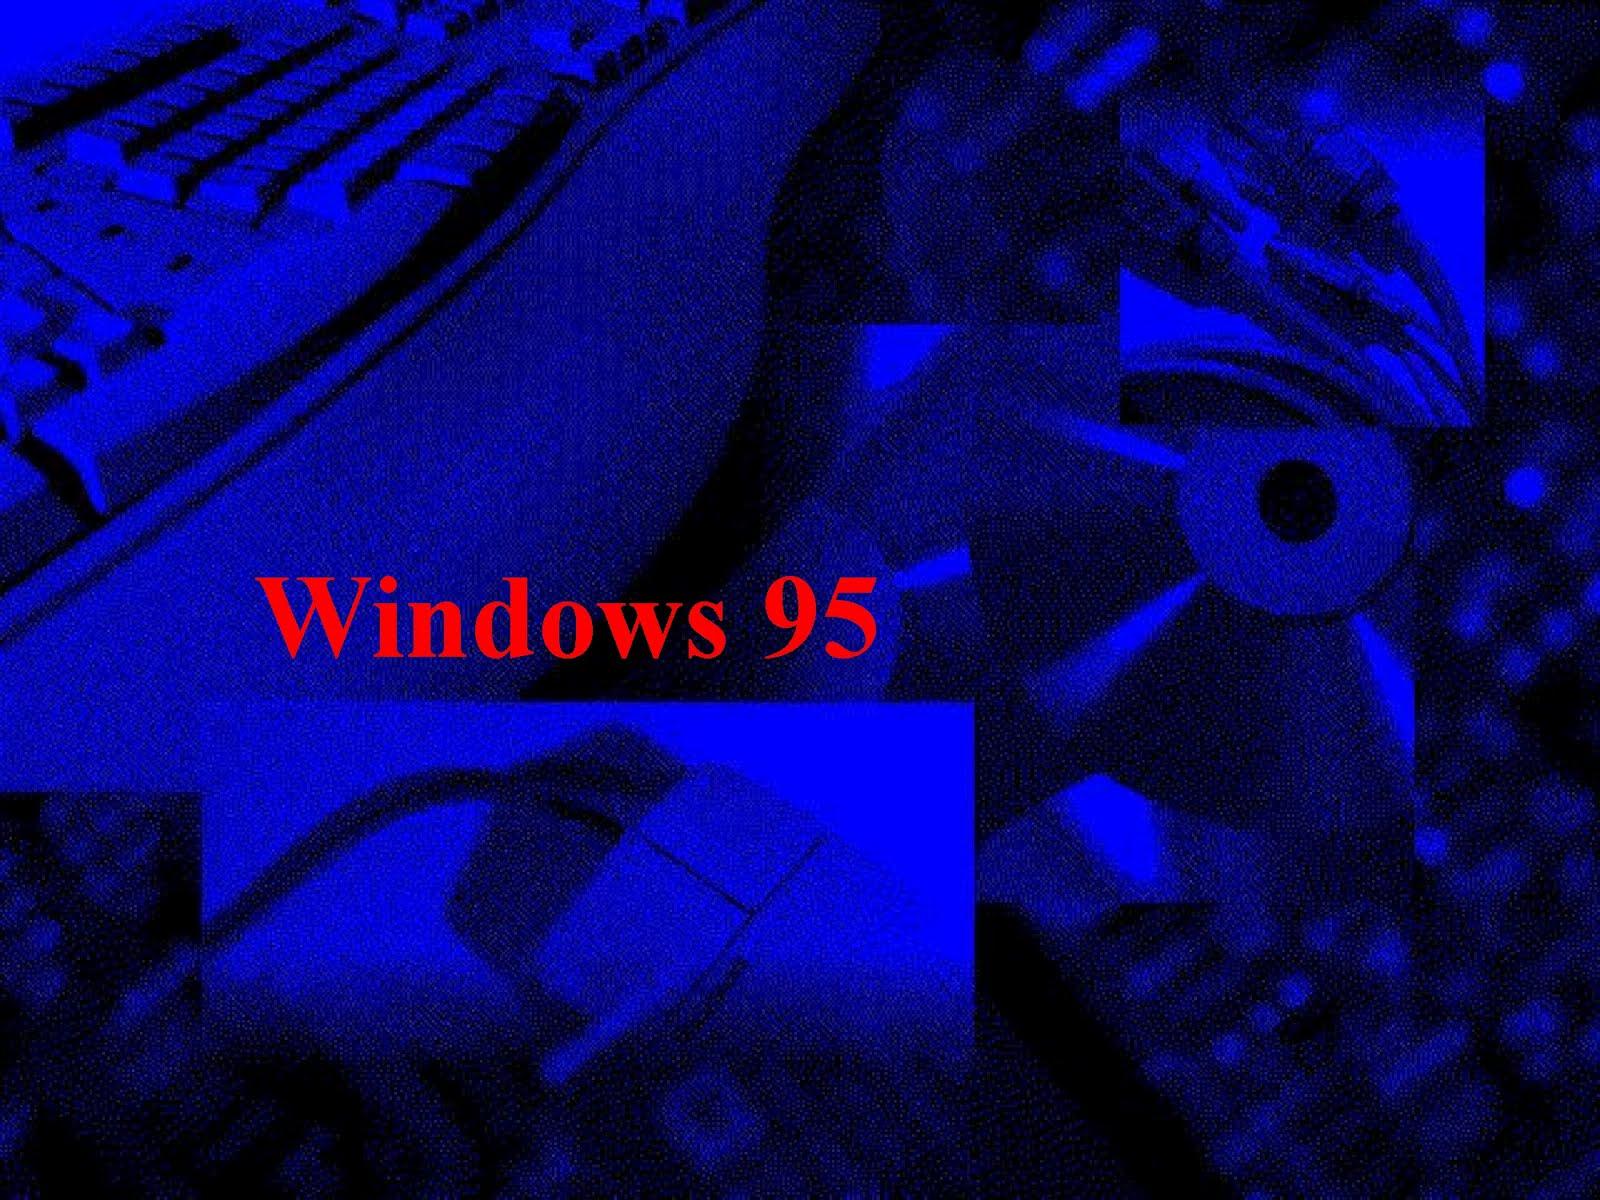 コンプリート Windows95 壁紙 Windows95 壁紙 色